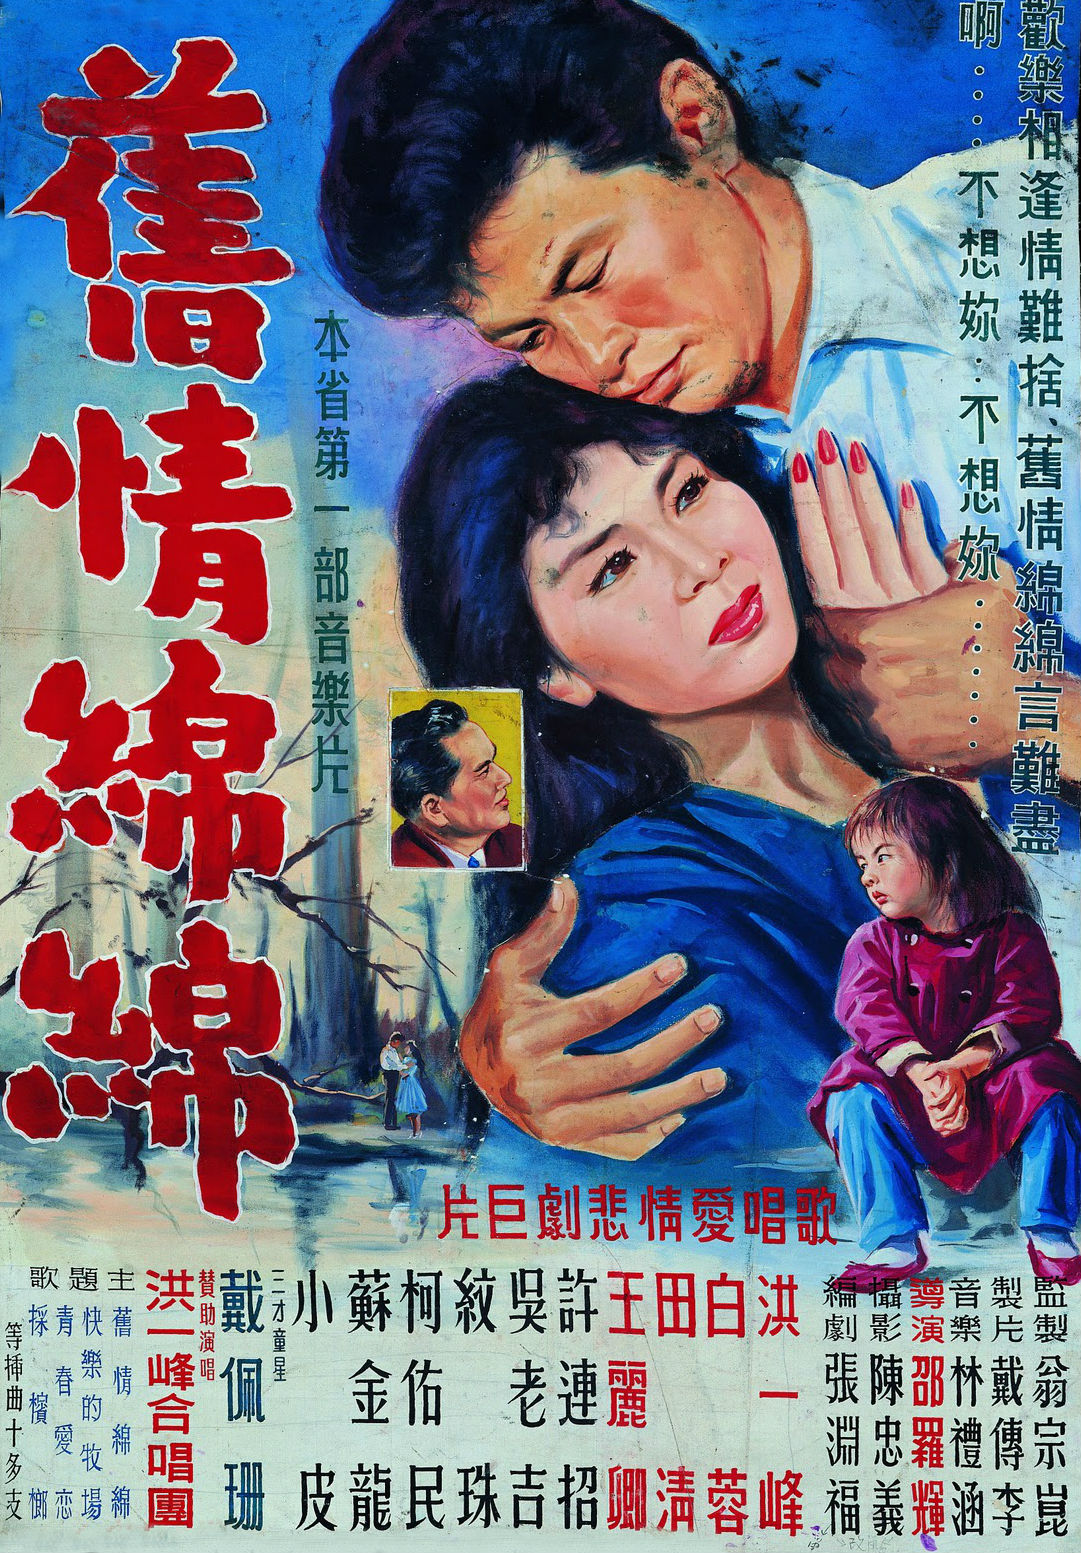 舊情綿綿(1962年邵羅輝執導的台灣電影)